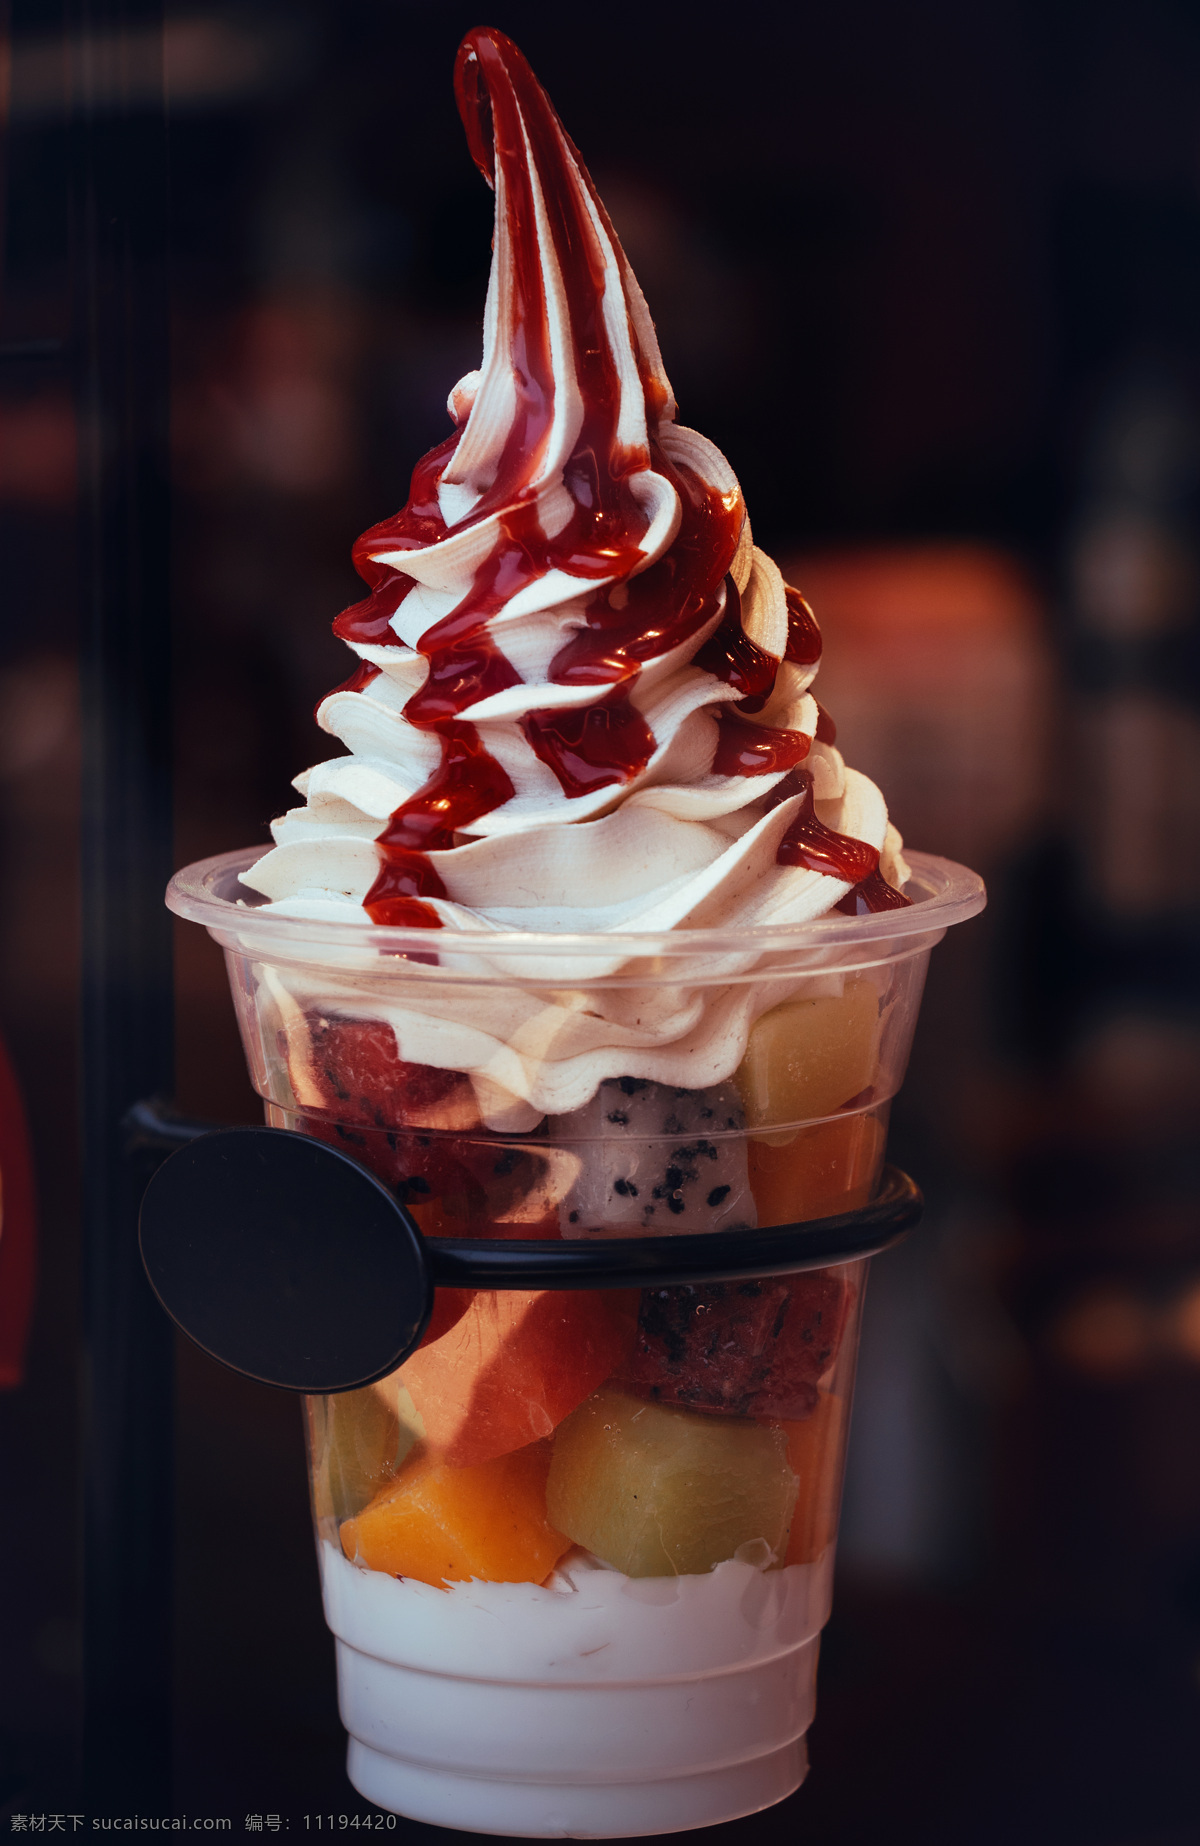 水果圣代 甜 冷 冰 水果 圣代冰淇凌 水果冰淇淋 水果奶油 餐饮美食 西餐美食